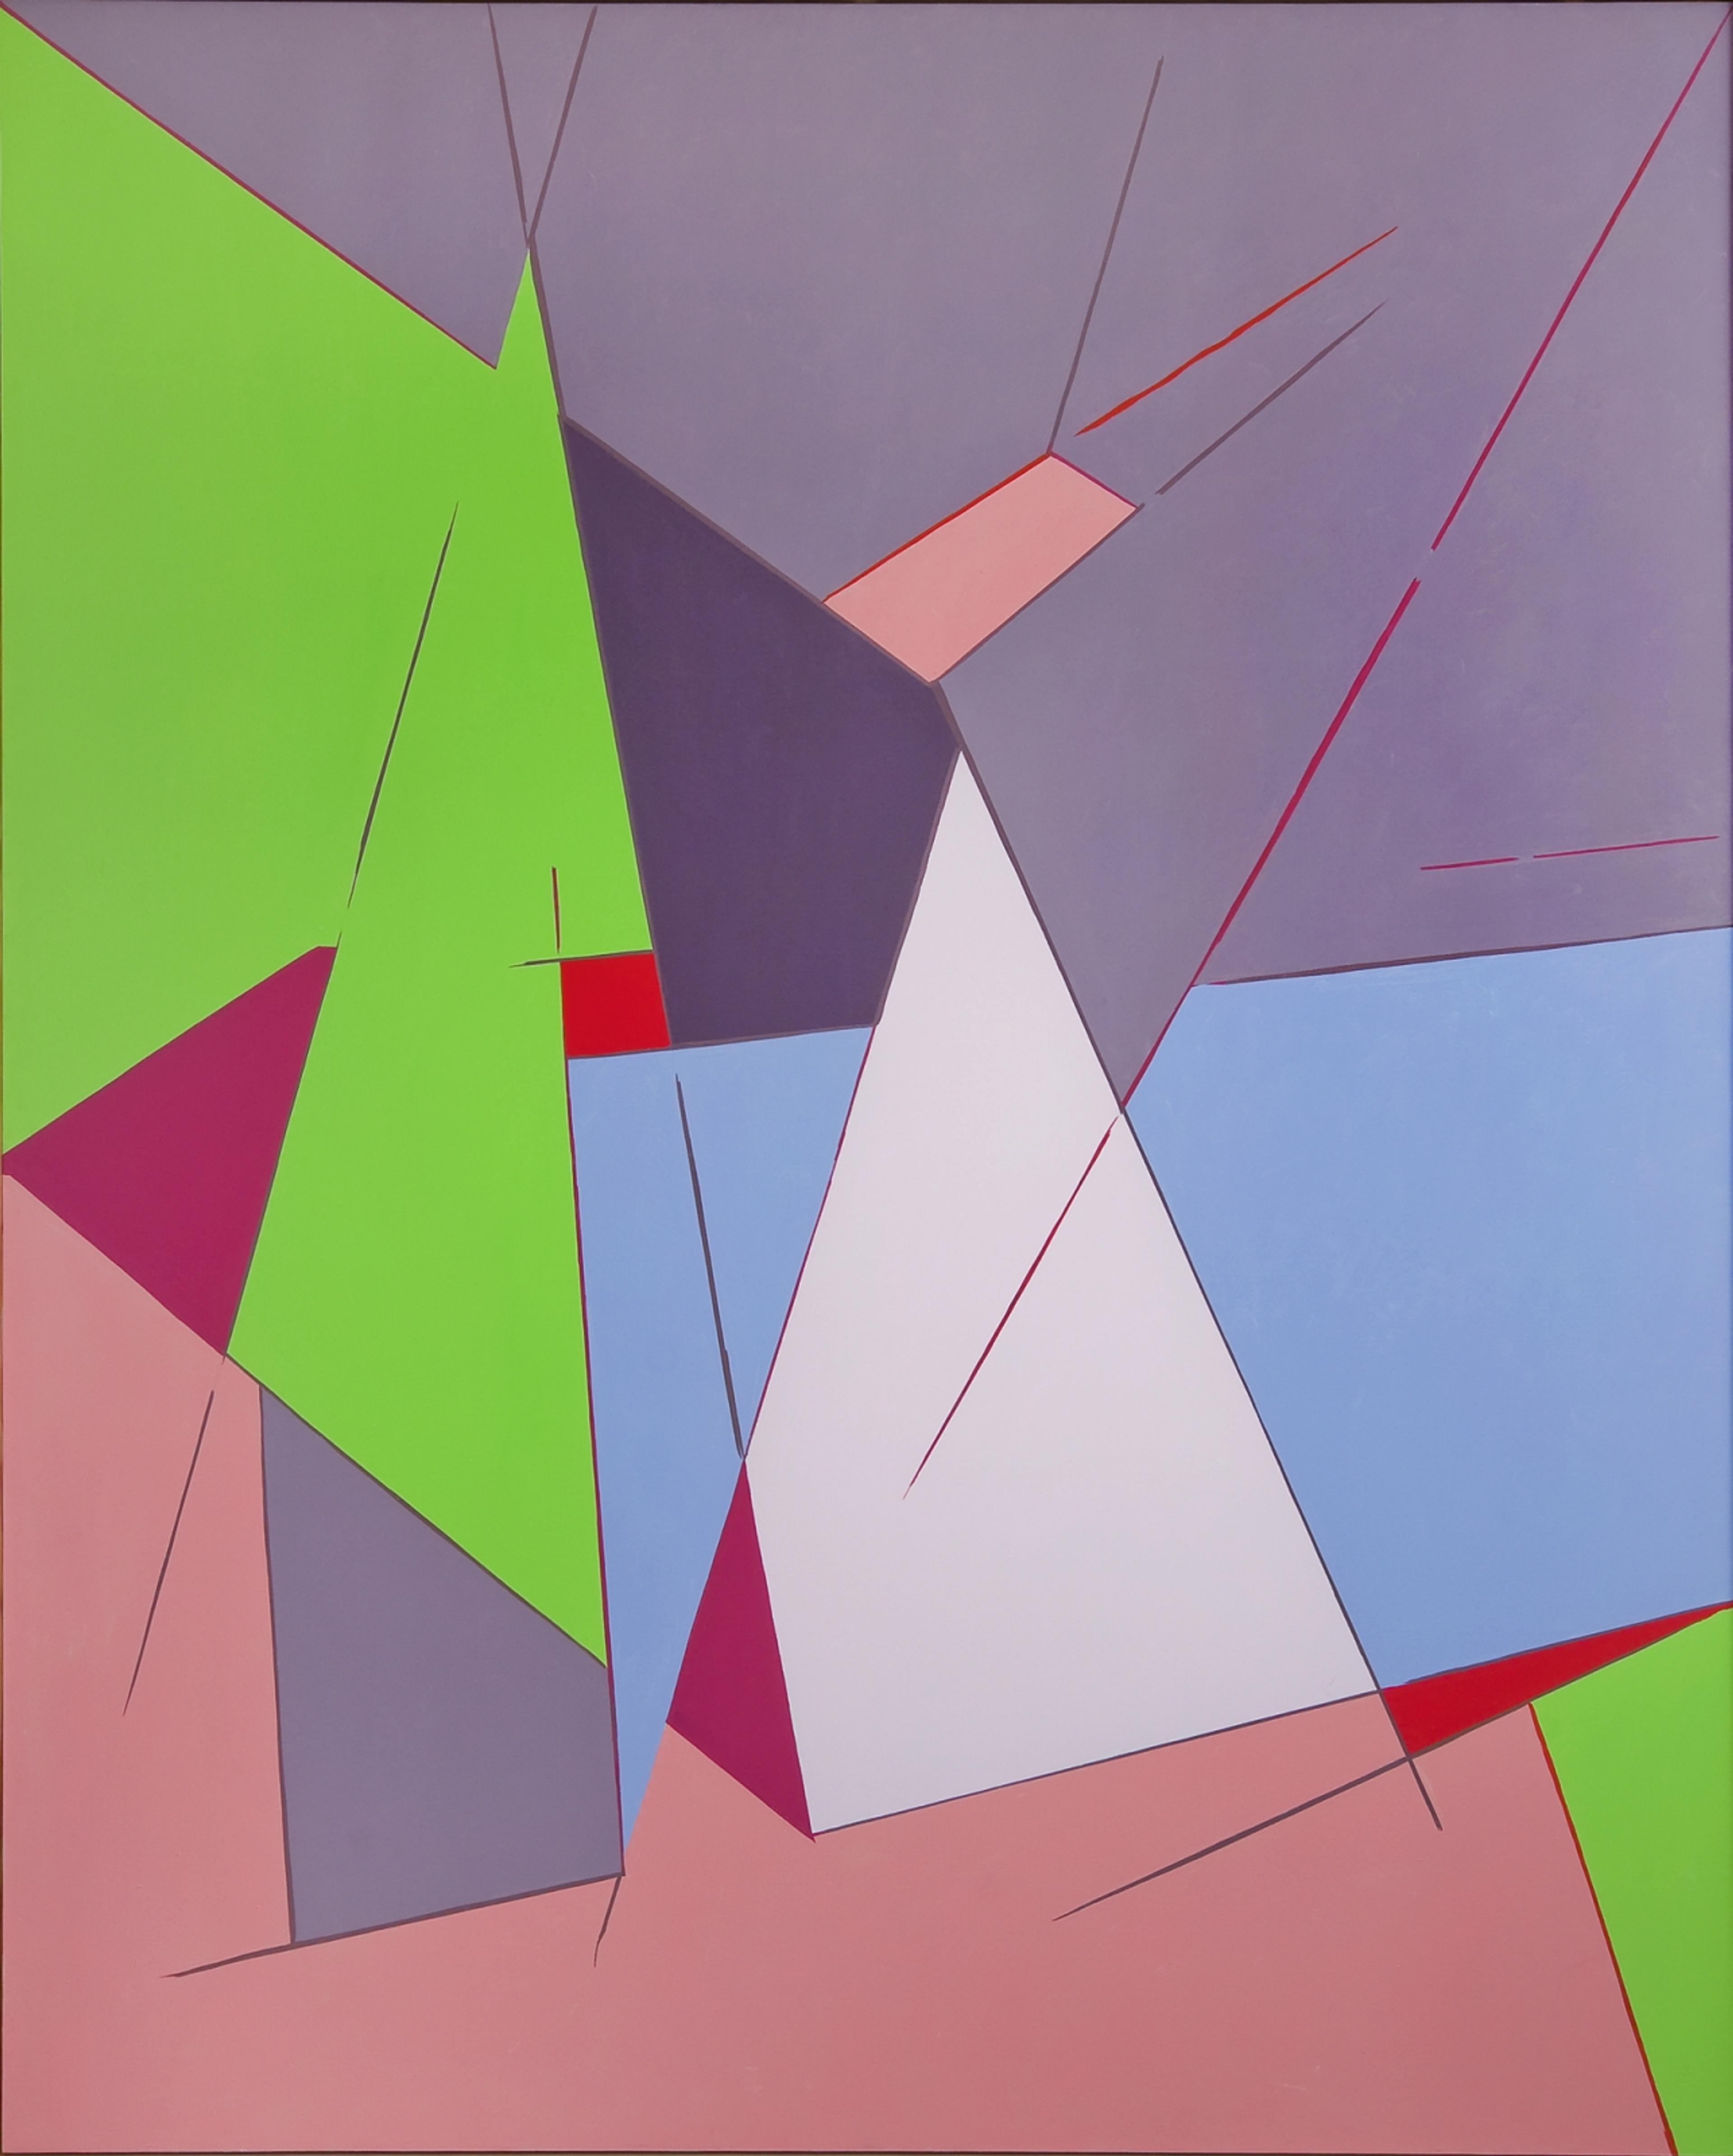 Abstrakt maleri med geometriske former i rosa, lilla og grønt